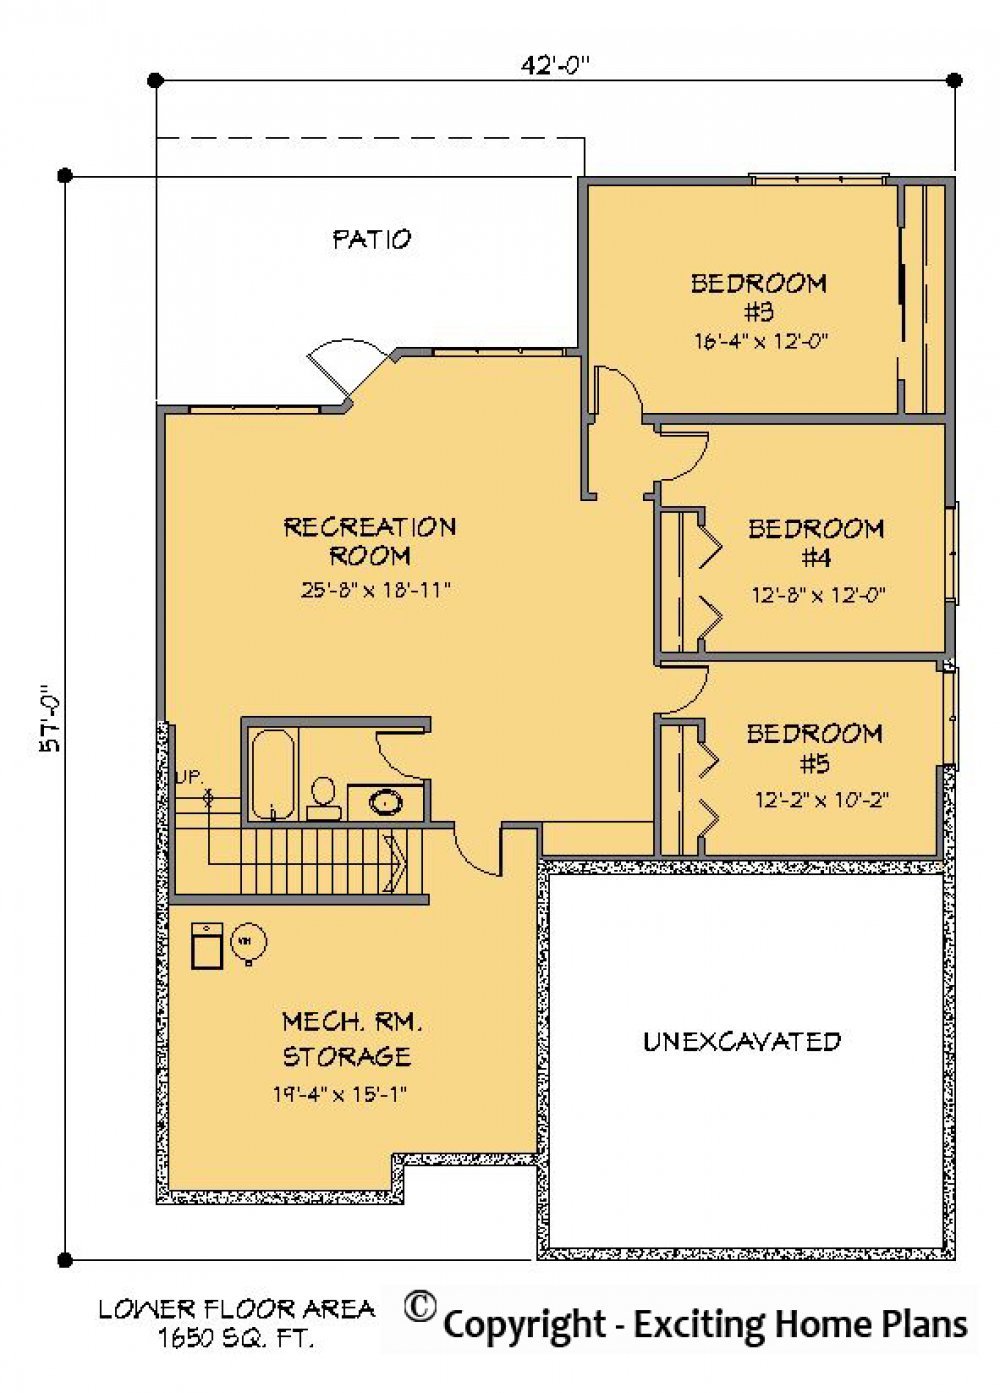 House Plan E1199-10 Lower Floor Plan